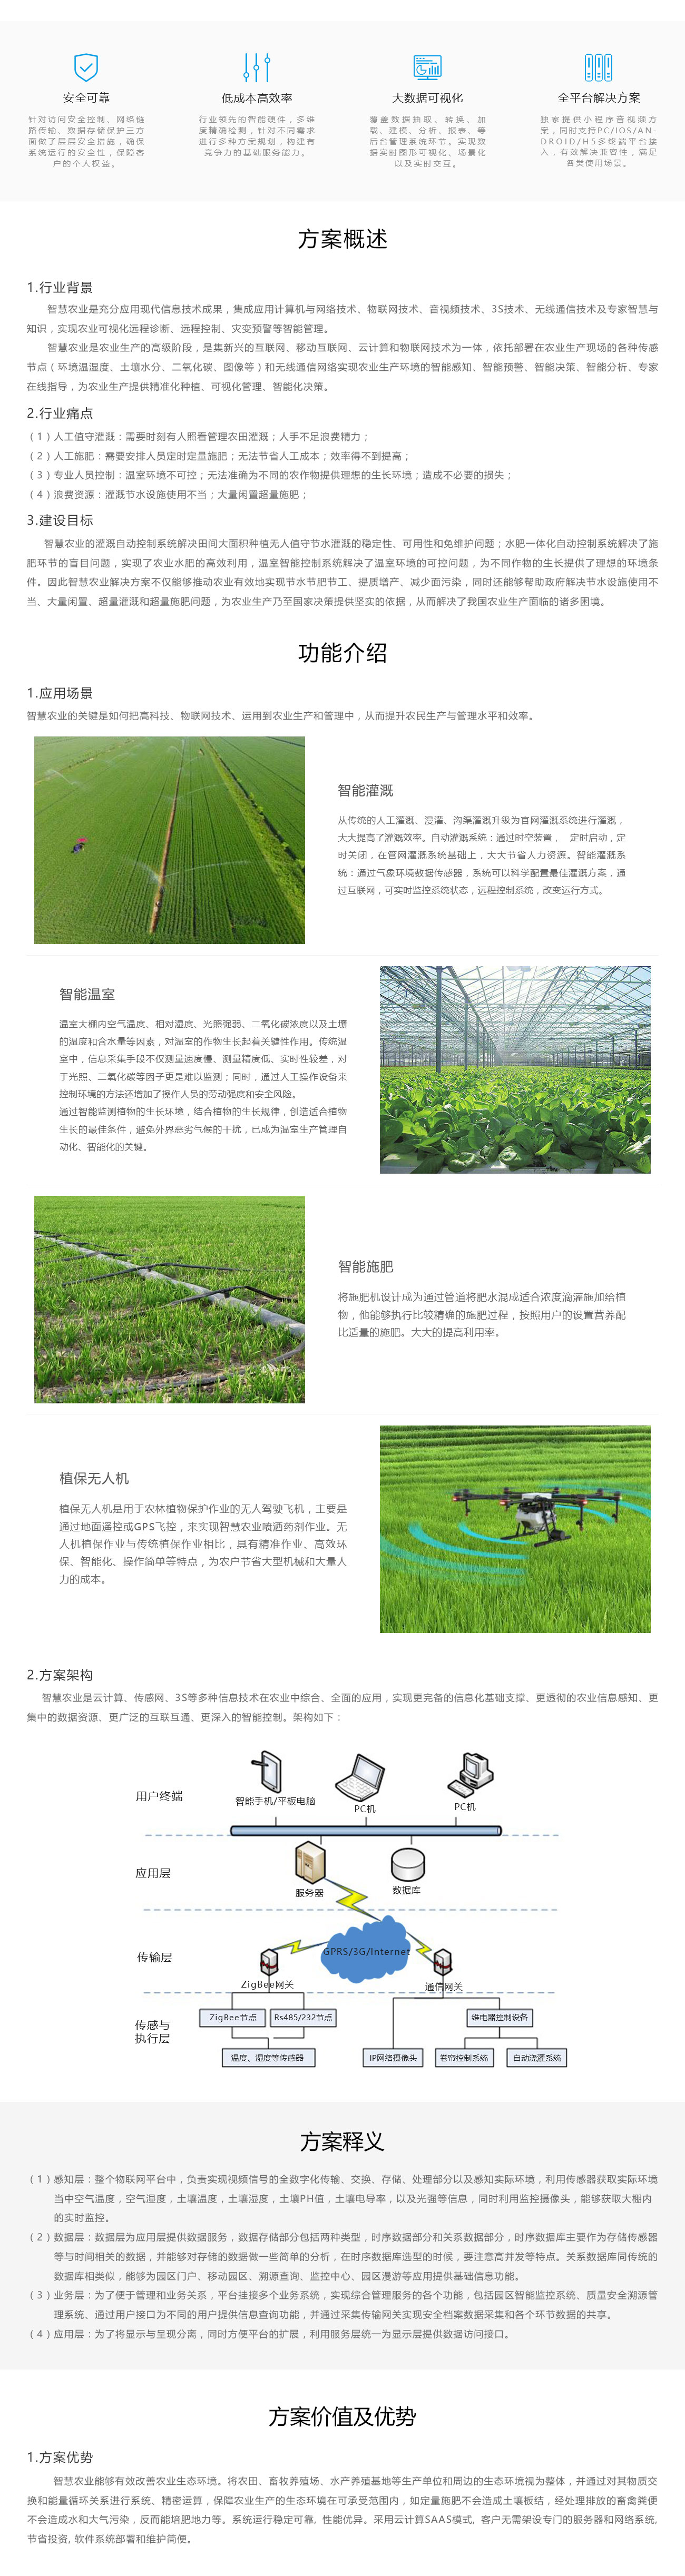 5解决方案-智慧农业（第二版）.jpg